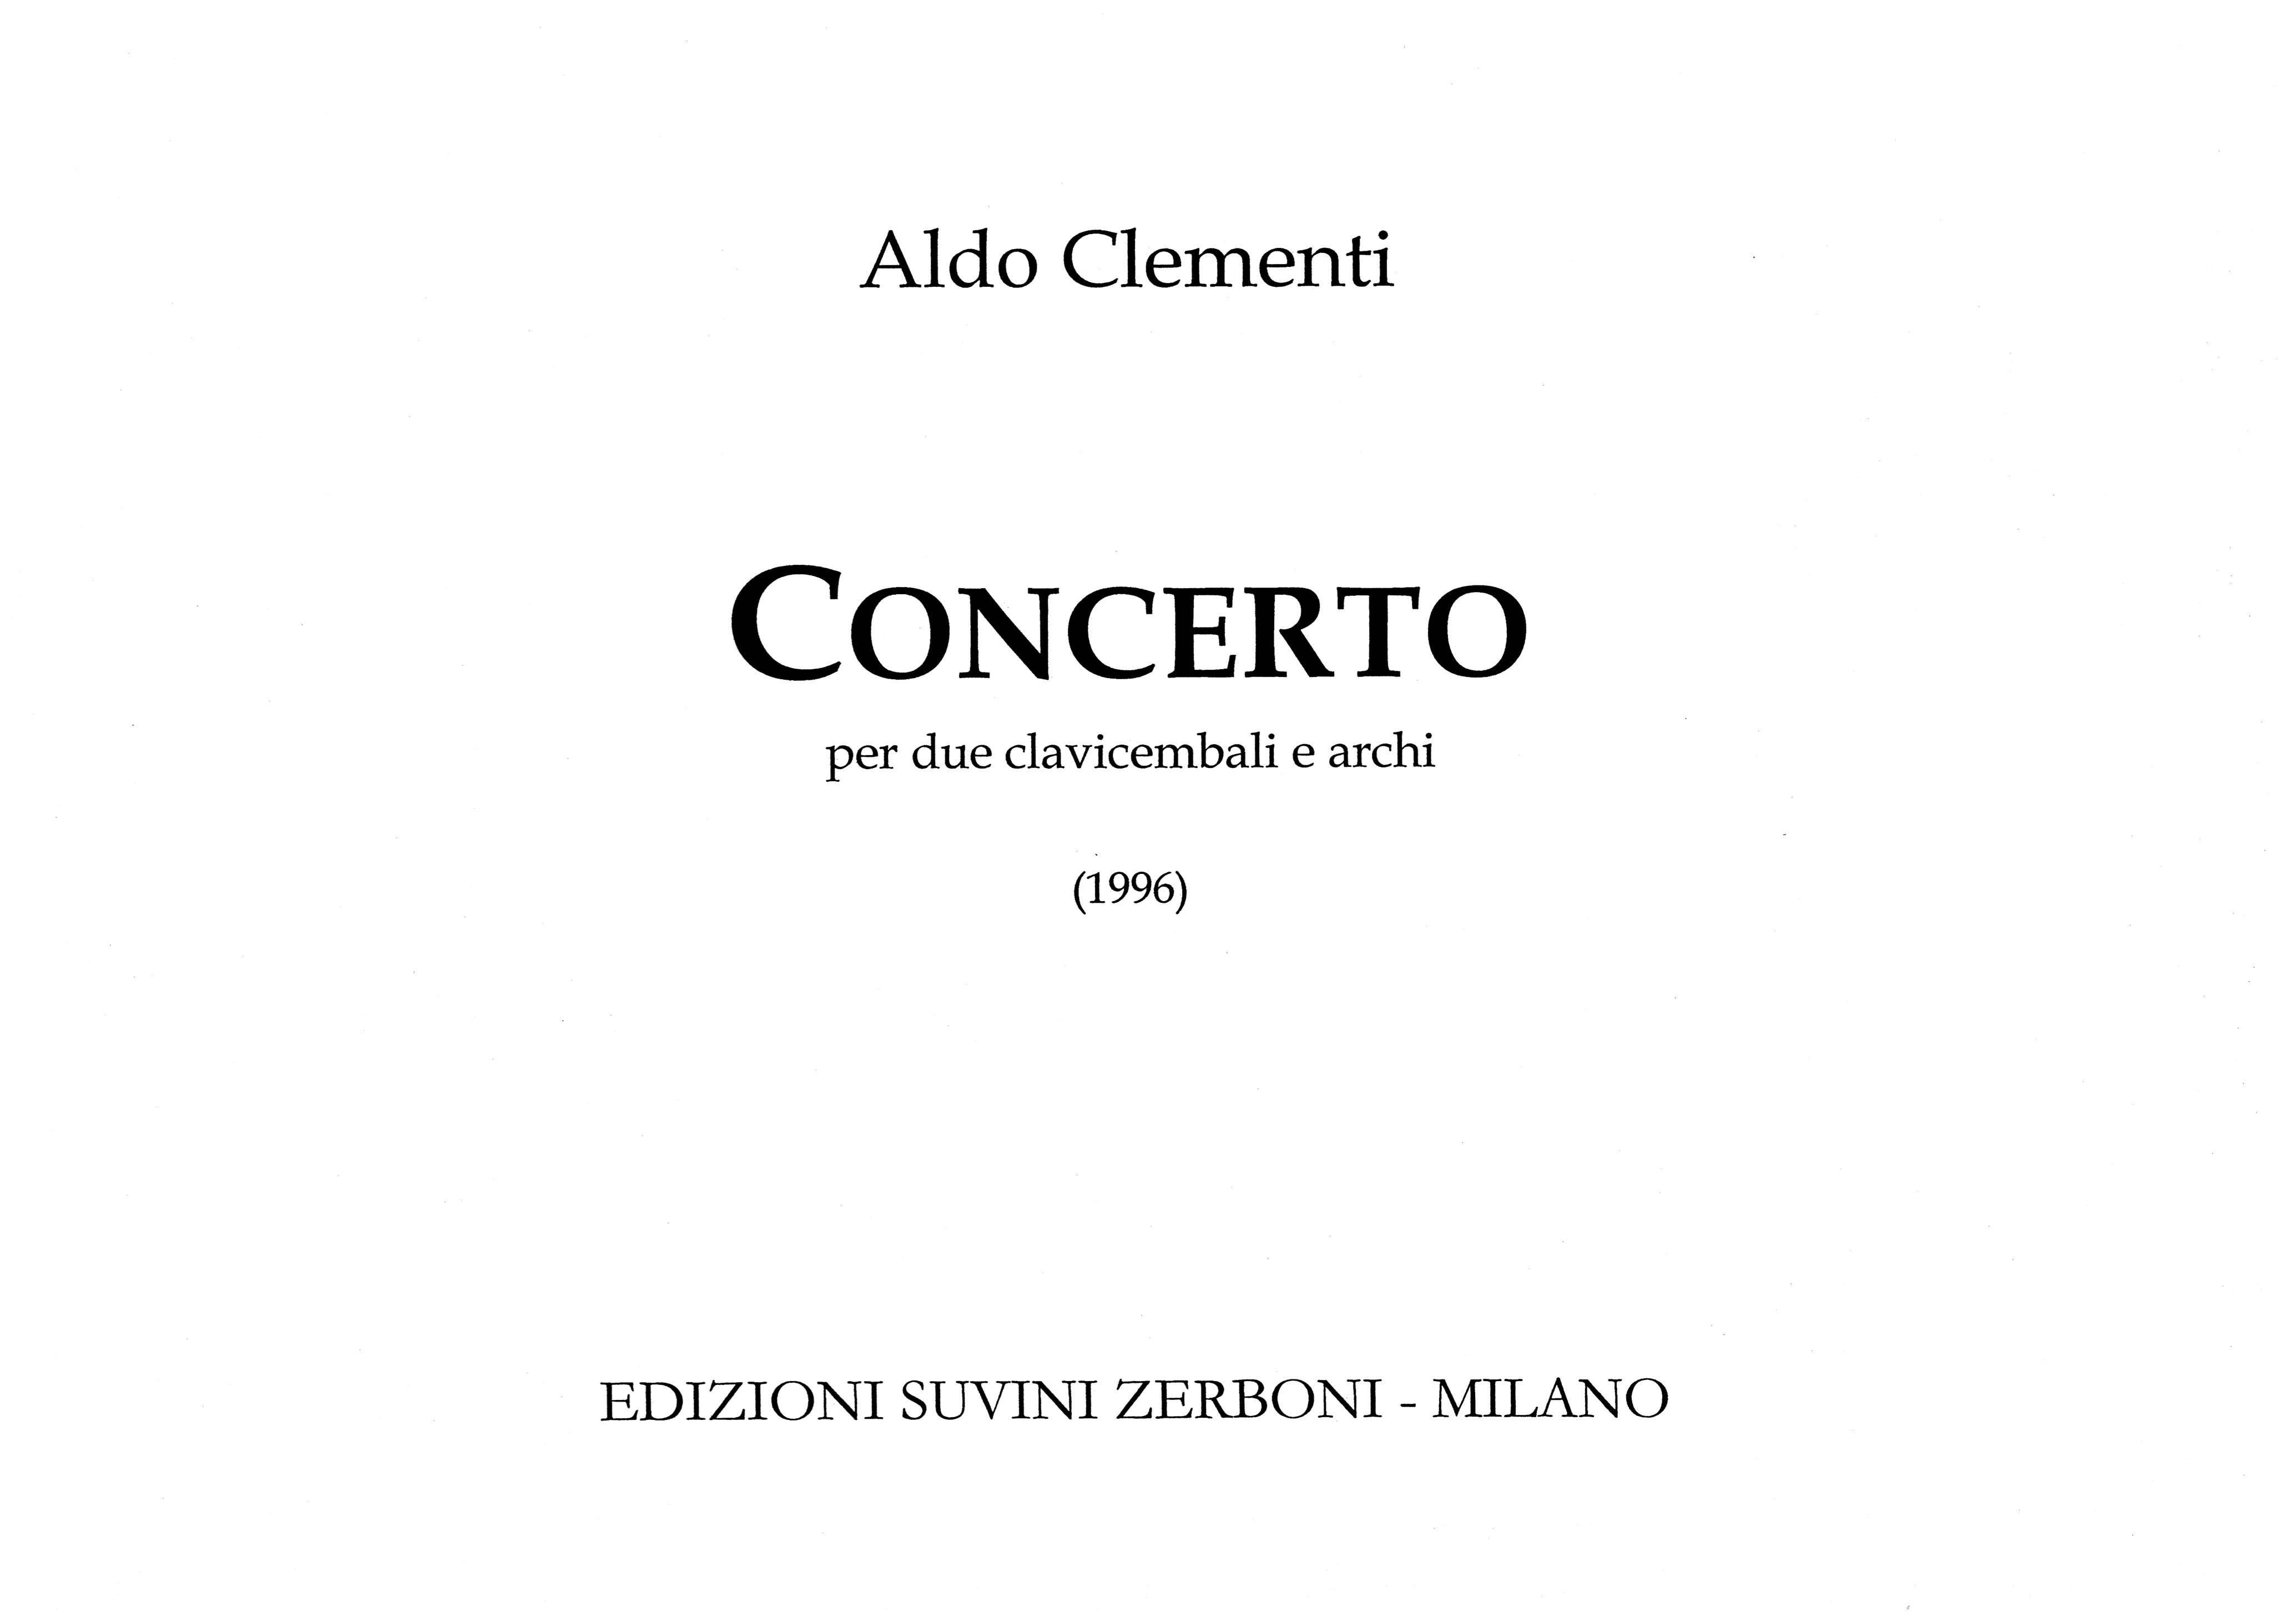 Concerto per 2 clavicembali e archi_Clementi Aldo 1